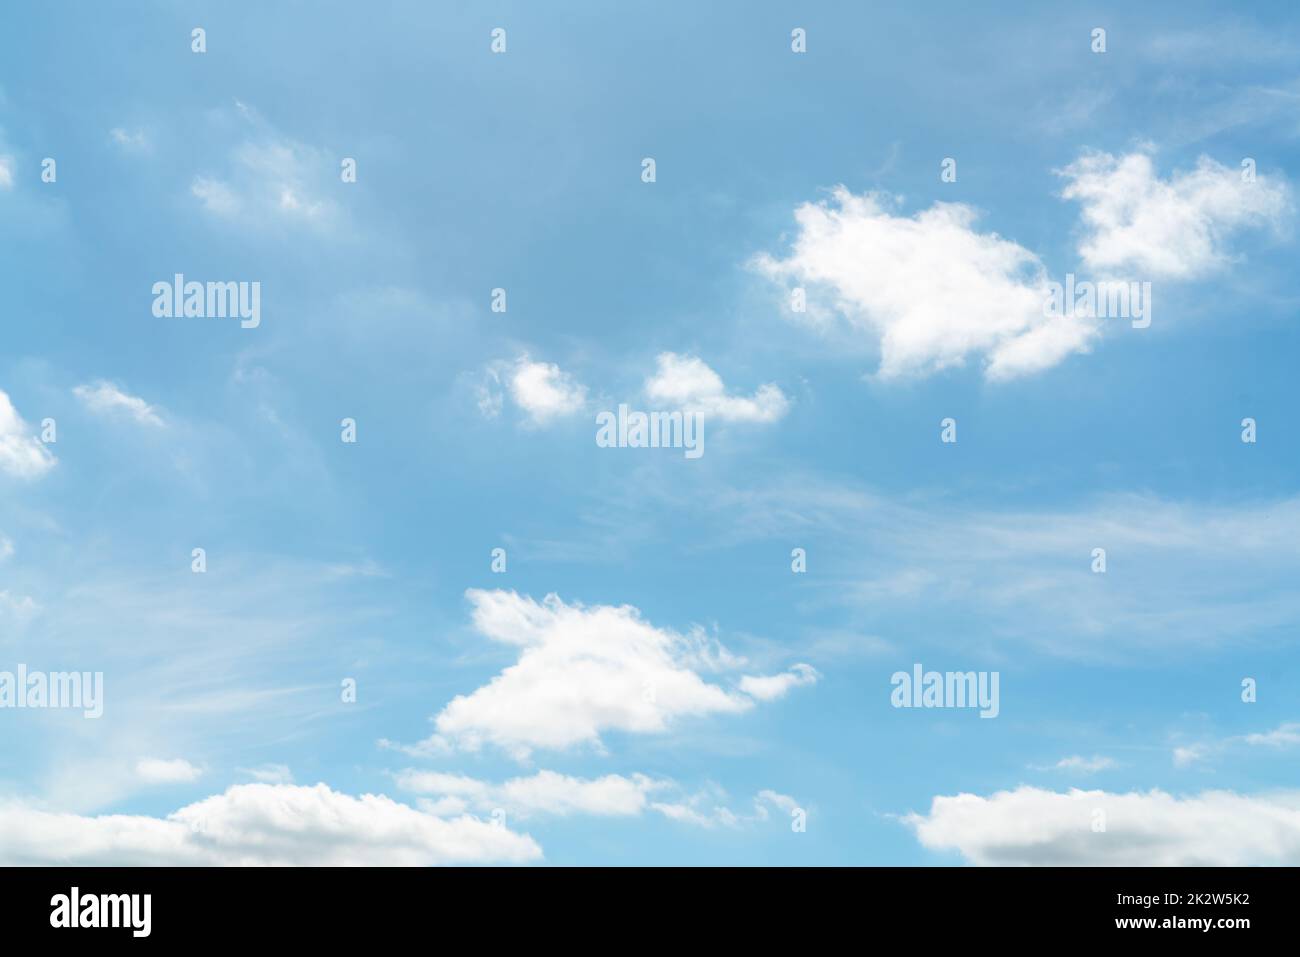 Wunderschöner blauer Himmel und weiße Kumuluswolken im Hintergrund. Wolkenuntergrund. Blauer Himmel und flauschige weiße Wolken an sonnigen Tagen. Naturwetter. Panoramablick auf den blauen Himmel. Hintergrund des Sommerhimmels. Stockfoto